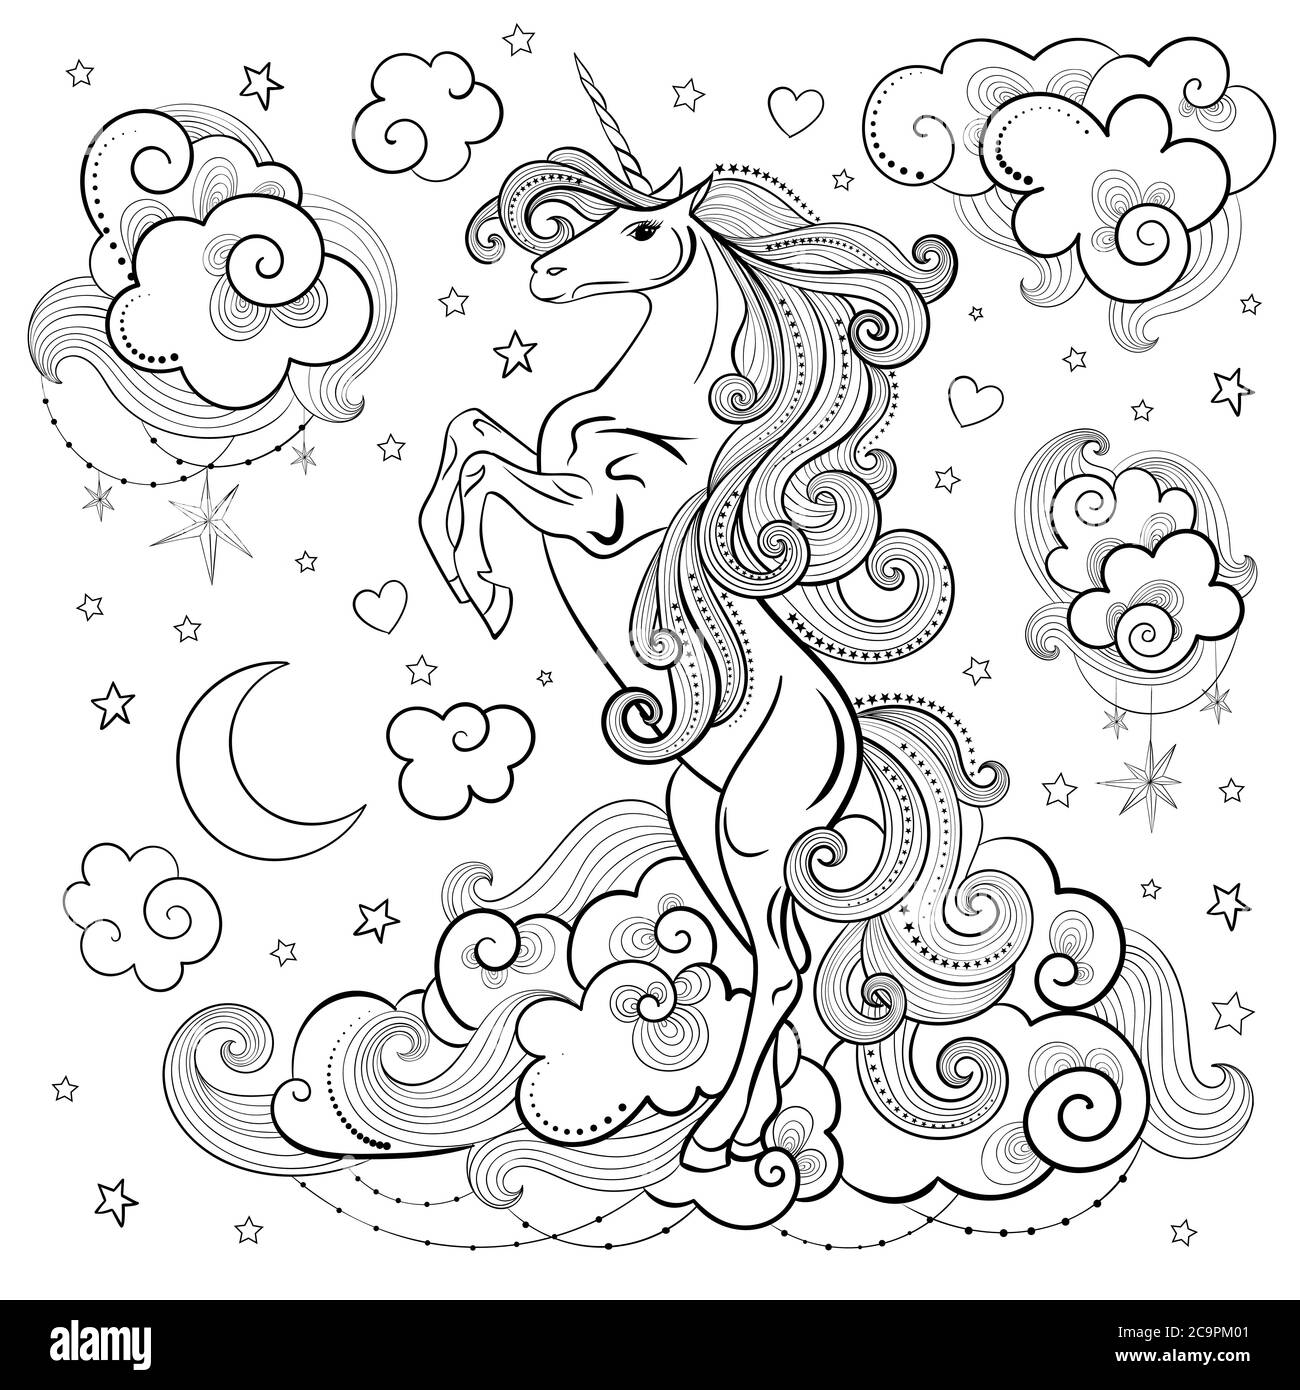 Adorable licorne sur les nuages, noir et blanc. Style Doodle. Animal fantaisie. Pour la conception d'imprimés, d'affiches, d'autocollants, de tatouages, de cartes, etc. Vect Illustration de Vecteur